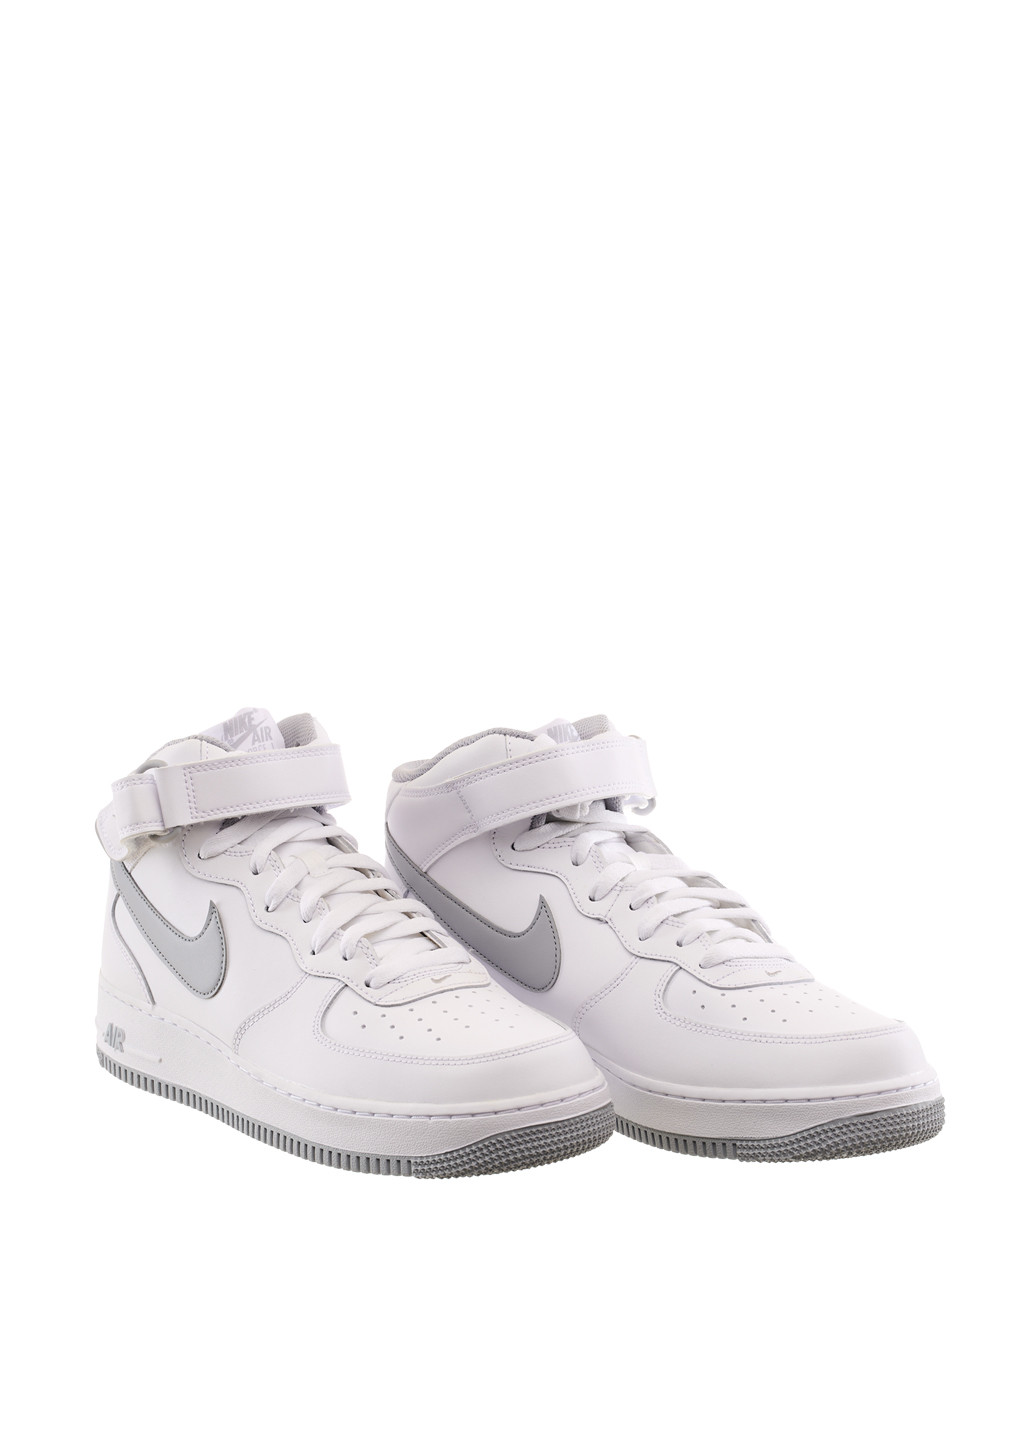 Белые демисезонные кроссовки dv0806-100_2024 Nike Air Force 1 Mid '07